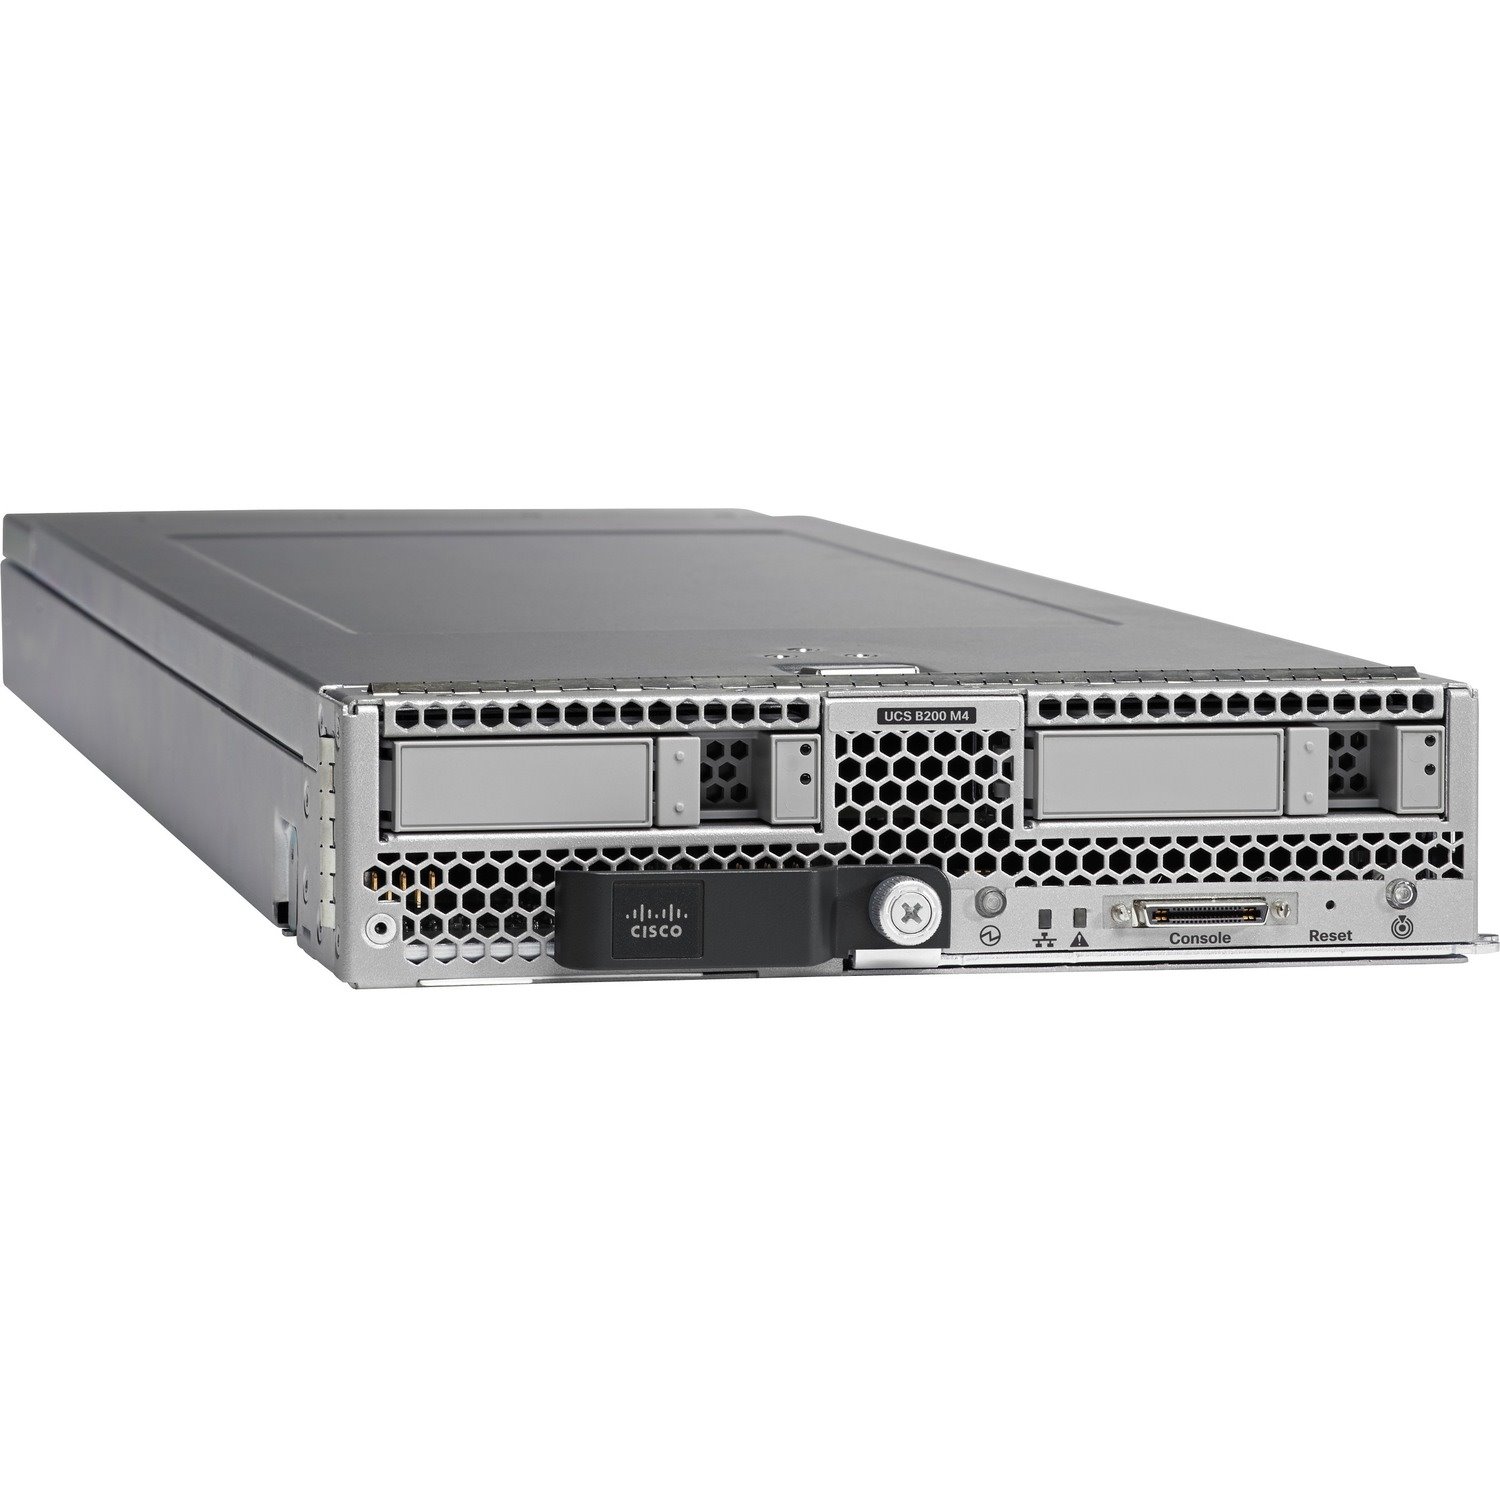 Cisco B200 M4 Blade Server - 2 x Intel Xeon E5-2667 v3 3.20 GHz - 256 GB RAM - Serial Attached SCSI (SAS), Serial ATA Controller